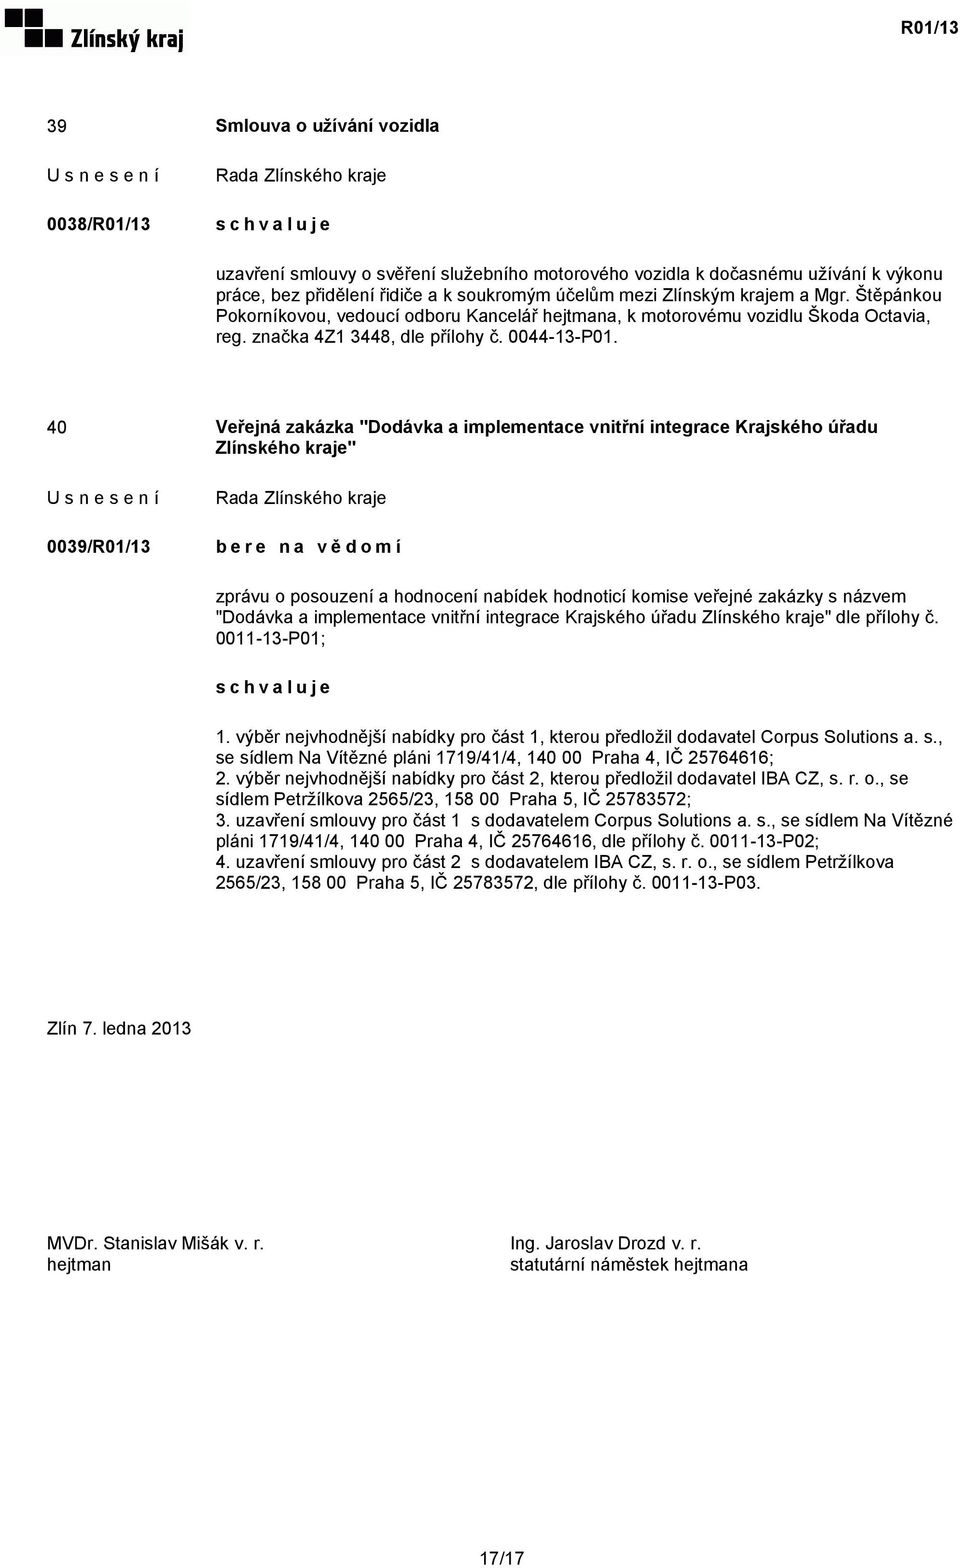 40 Veřejná zakázka "Dodávka a implementace vnitřní integrace Krajského úřadu Zlínského kraje" 0039/R01/13 zprávu o posouzení a hodnocení nabídek hodnoticí komise veřejné zakázky s názvem "Dodávka a